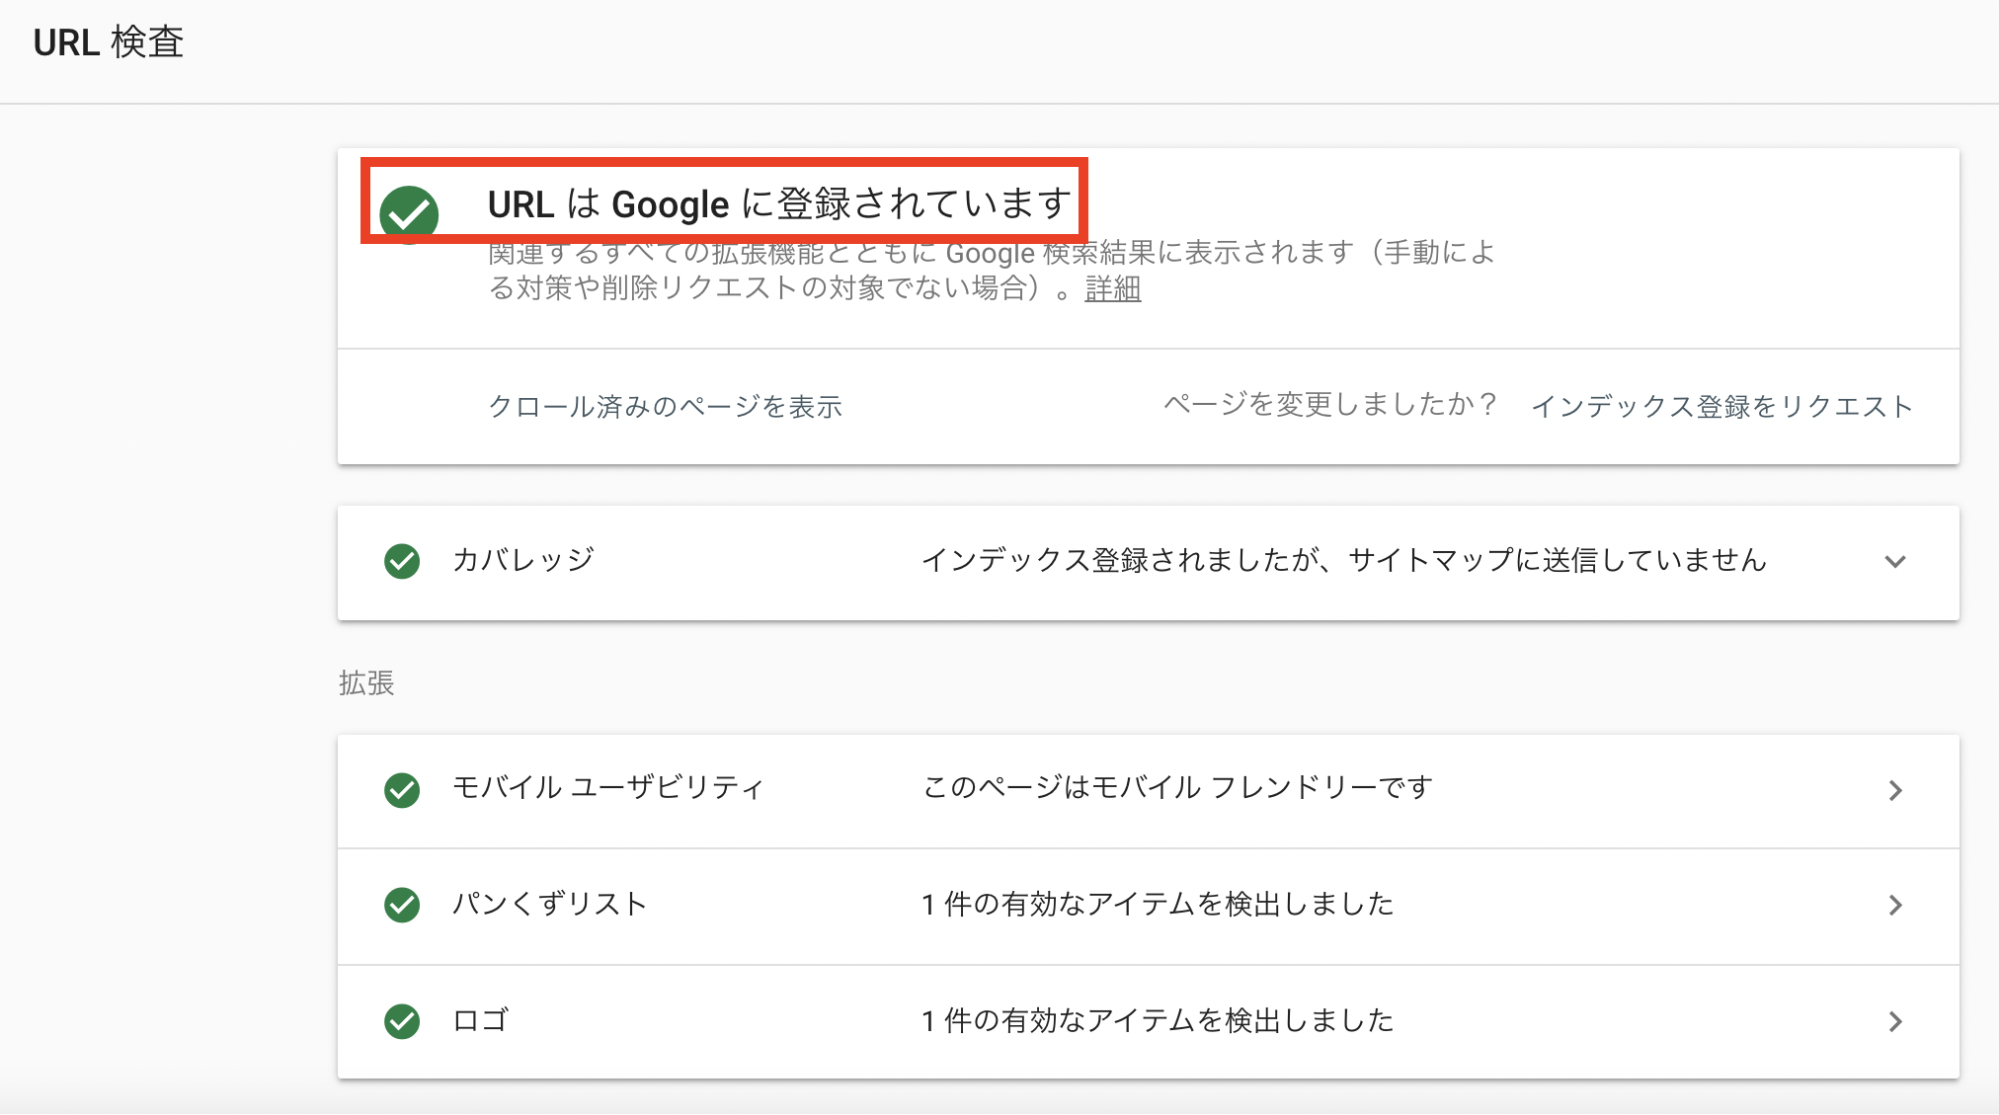 URLはGoogleに登録されています